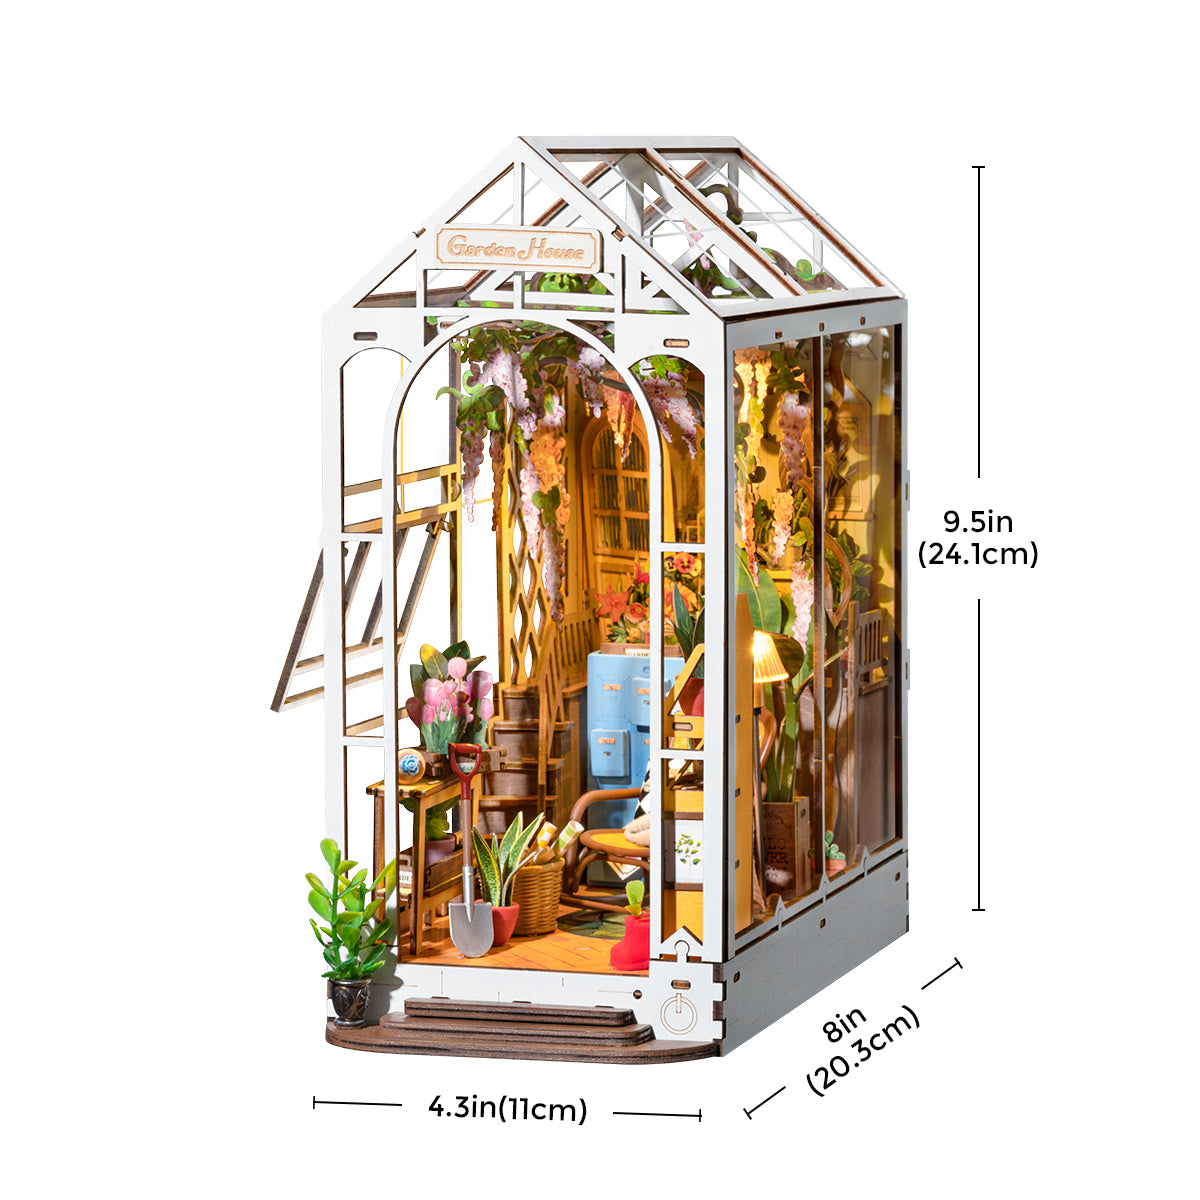 Book Nook Shelf Insert - Holiday Garden House